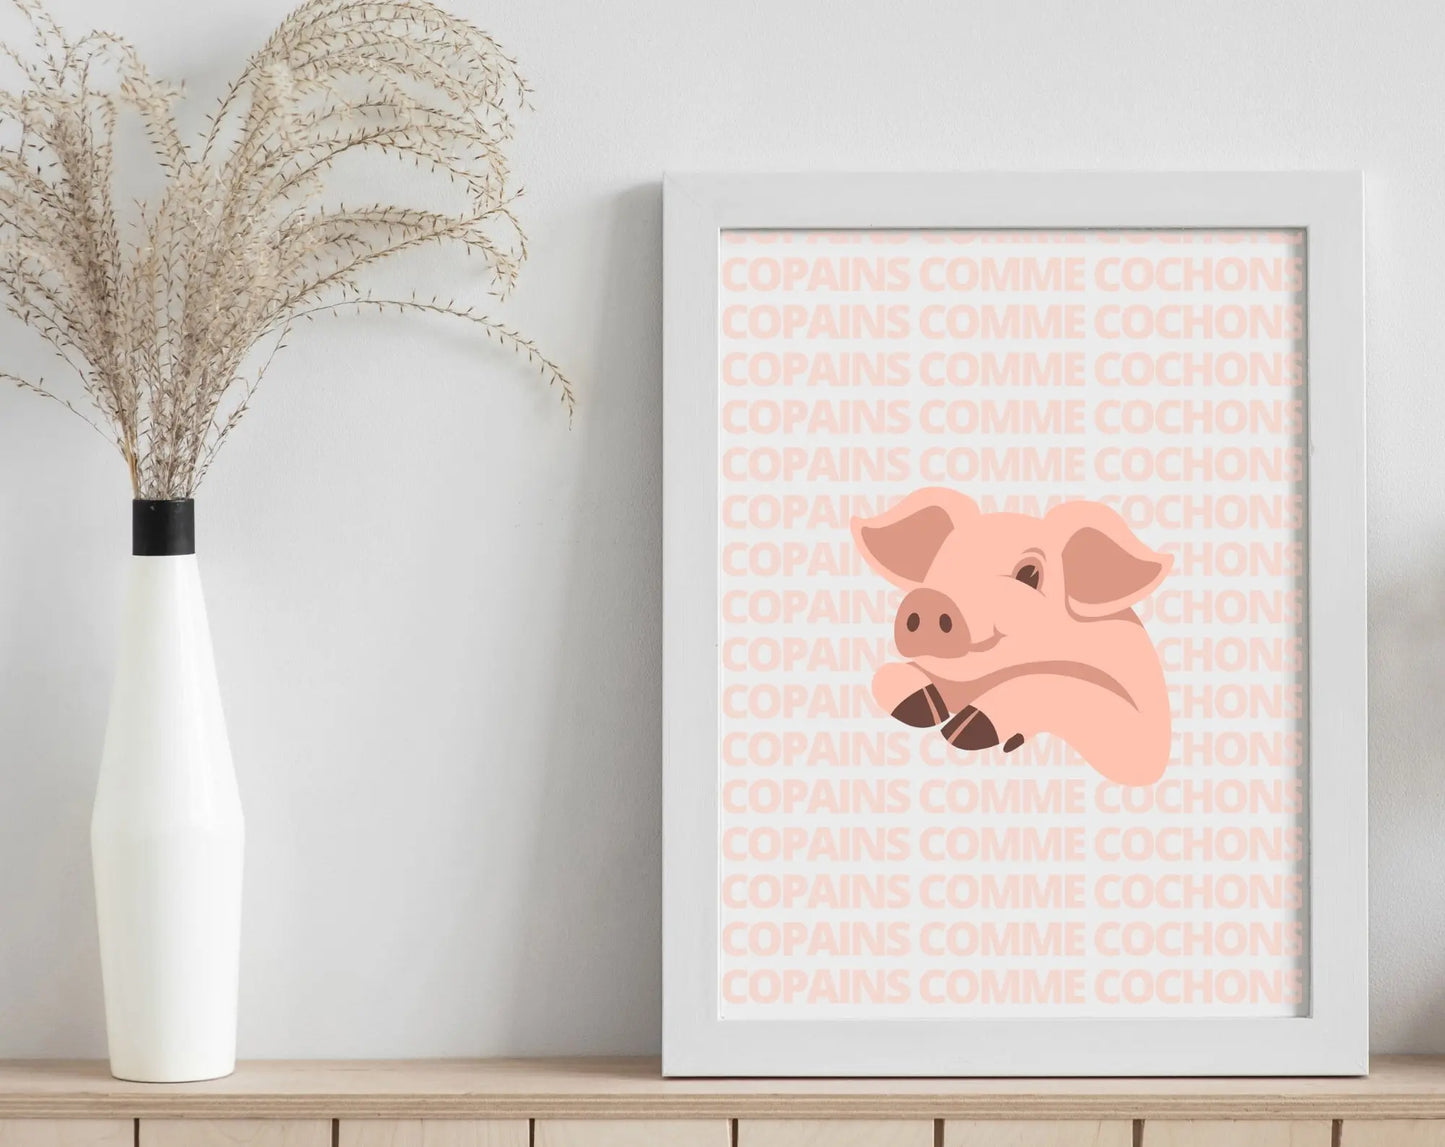 Affiche Copains comme cochons - Expression culinaire Française FLTMfrance